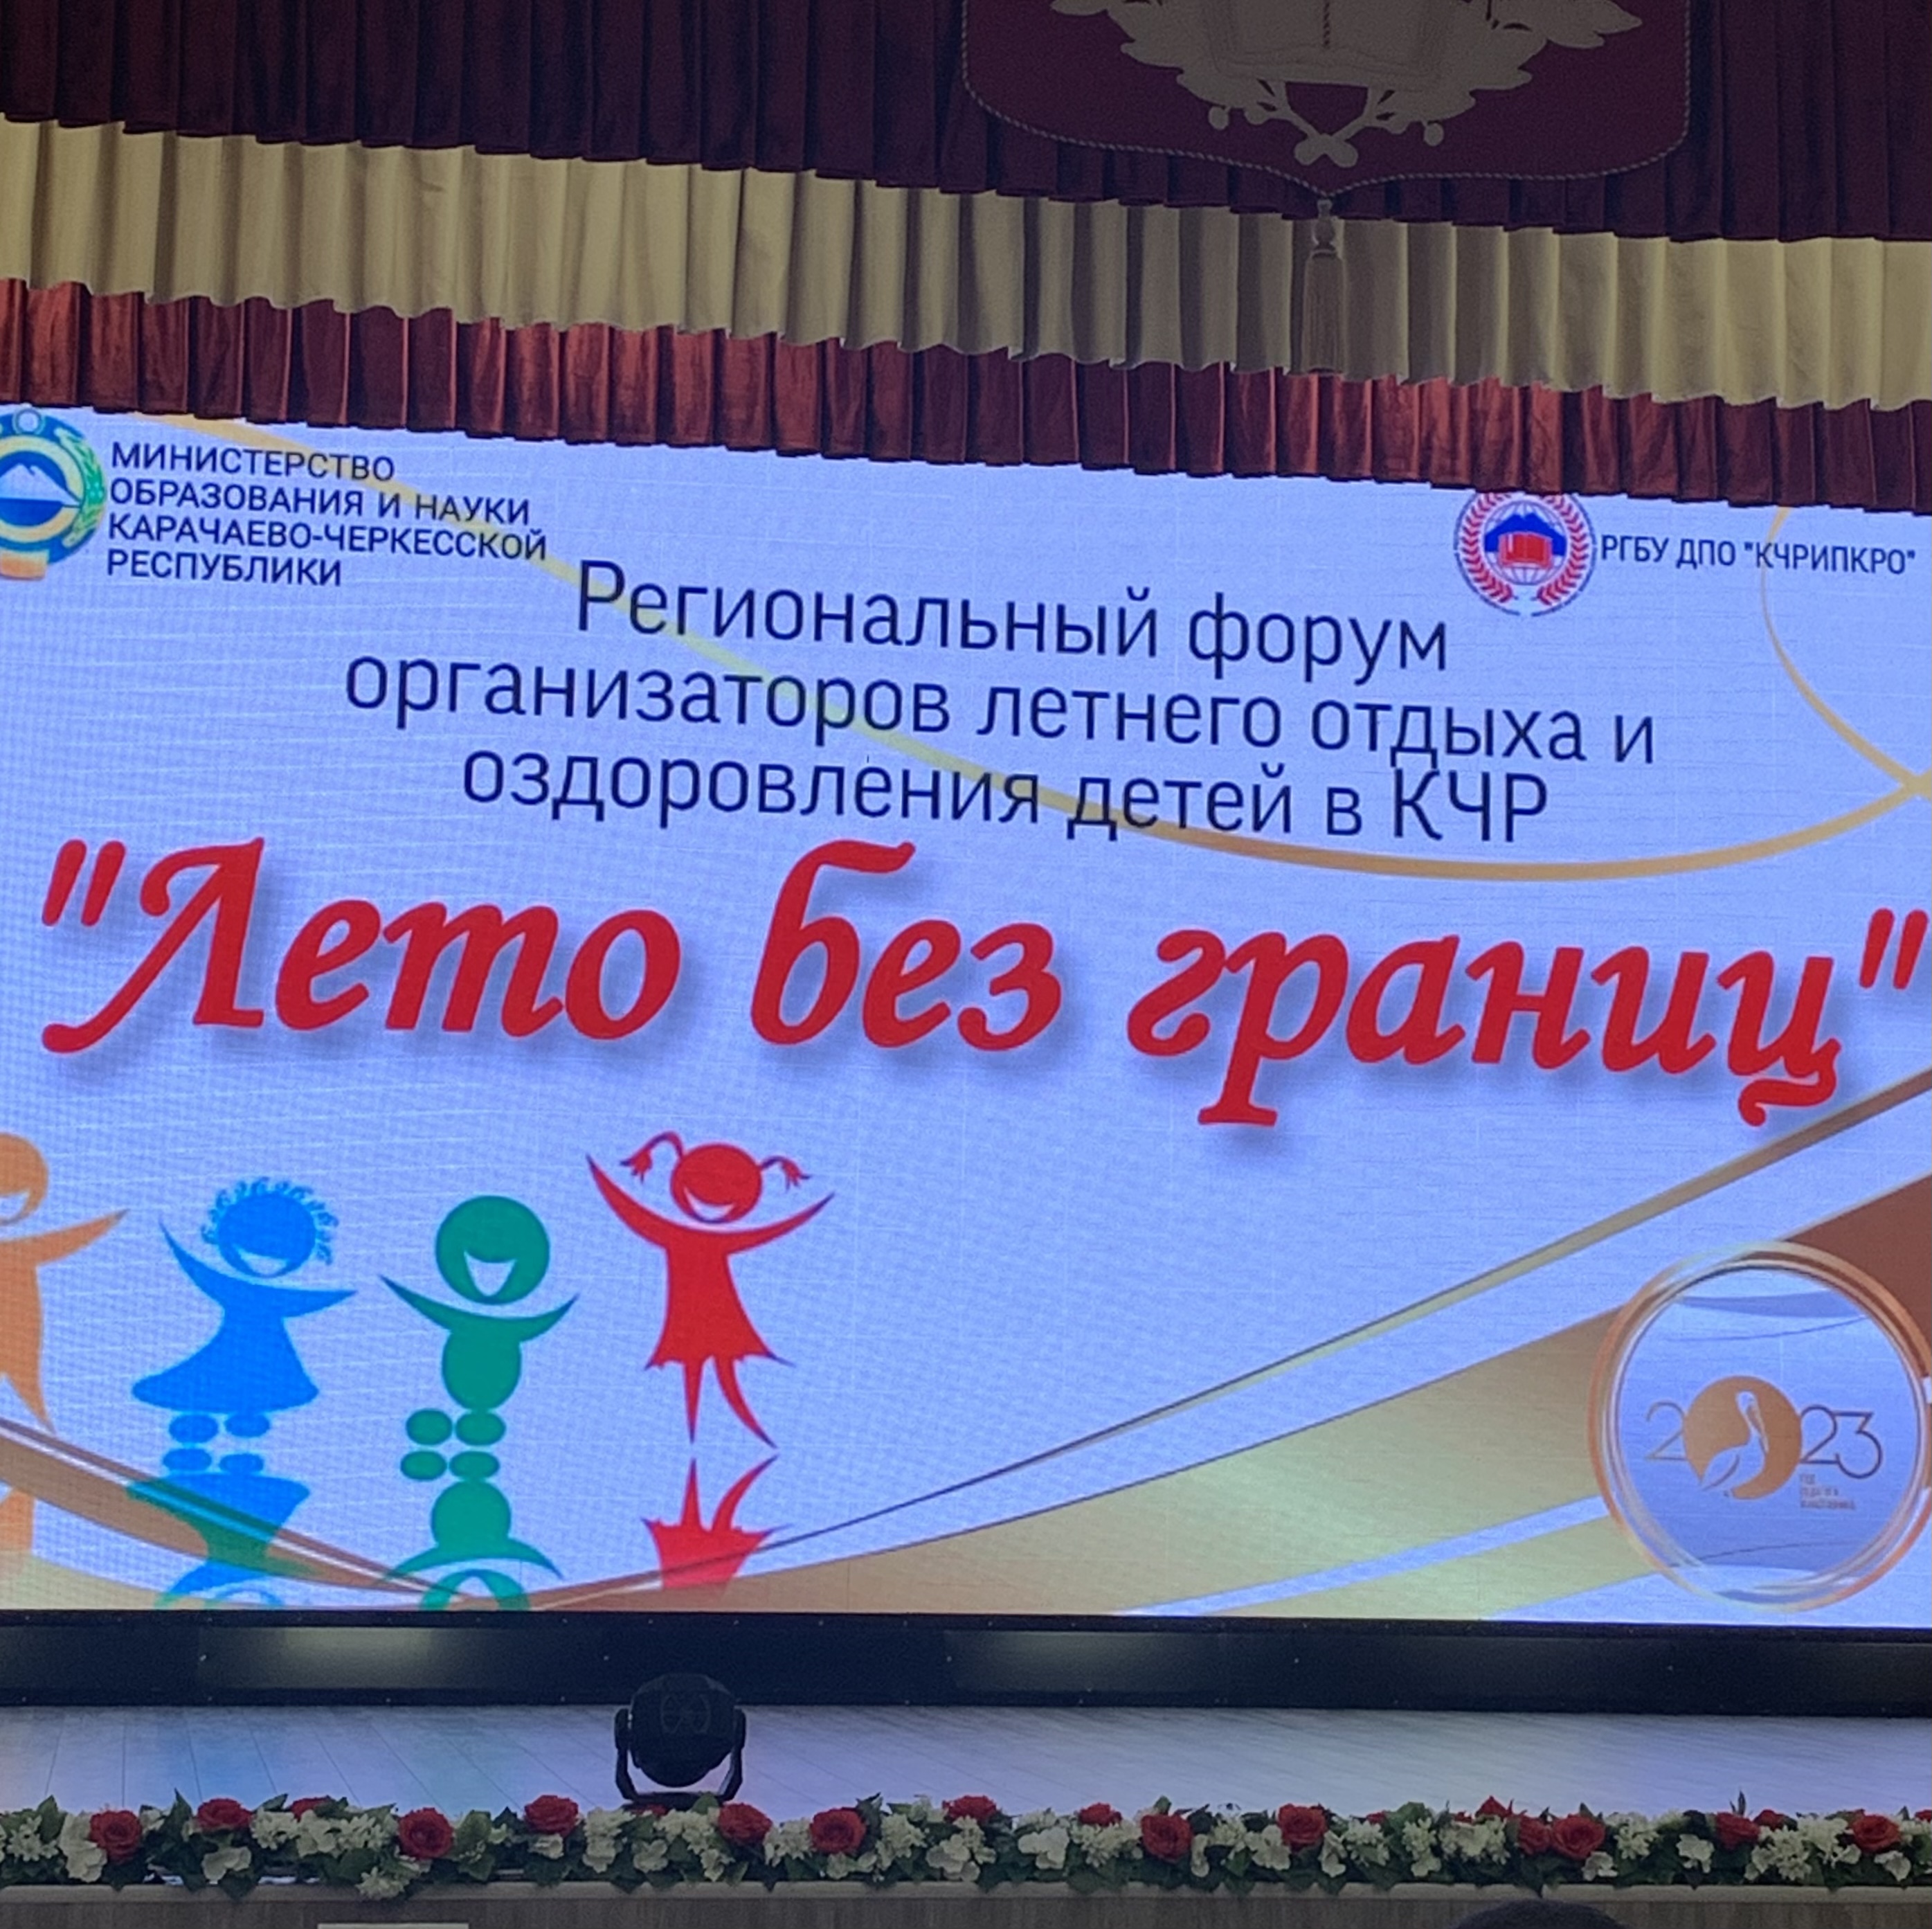 В Карачаево-Черкесии прошел региональный форум организаторов летнего отдыха и оздоровления детей​